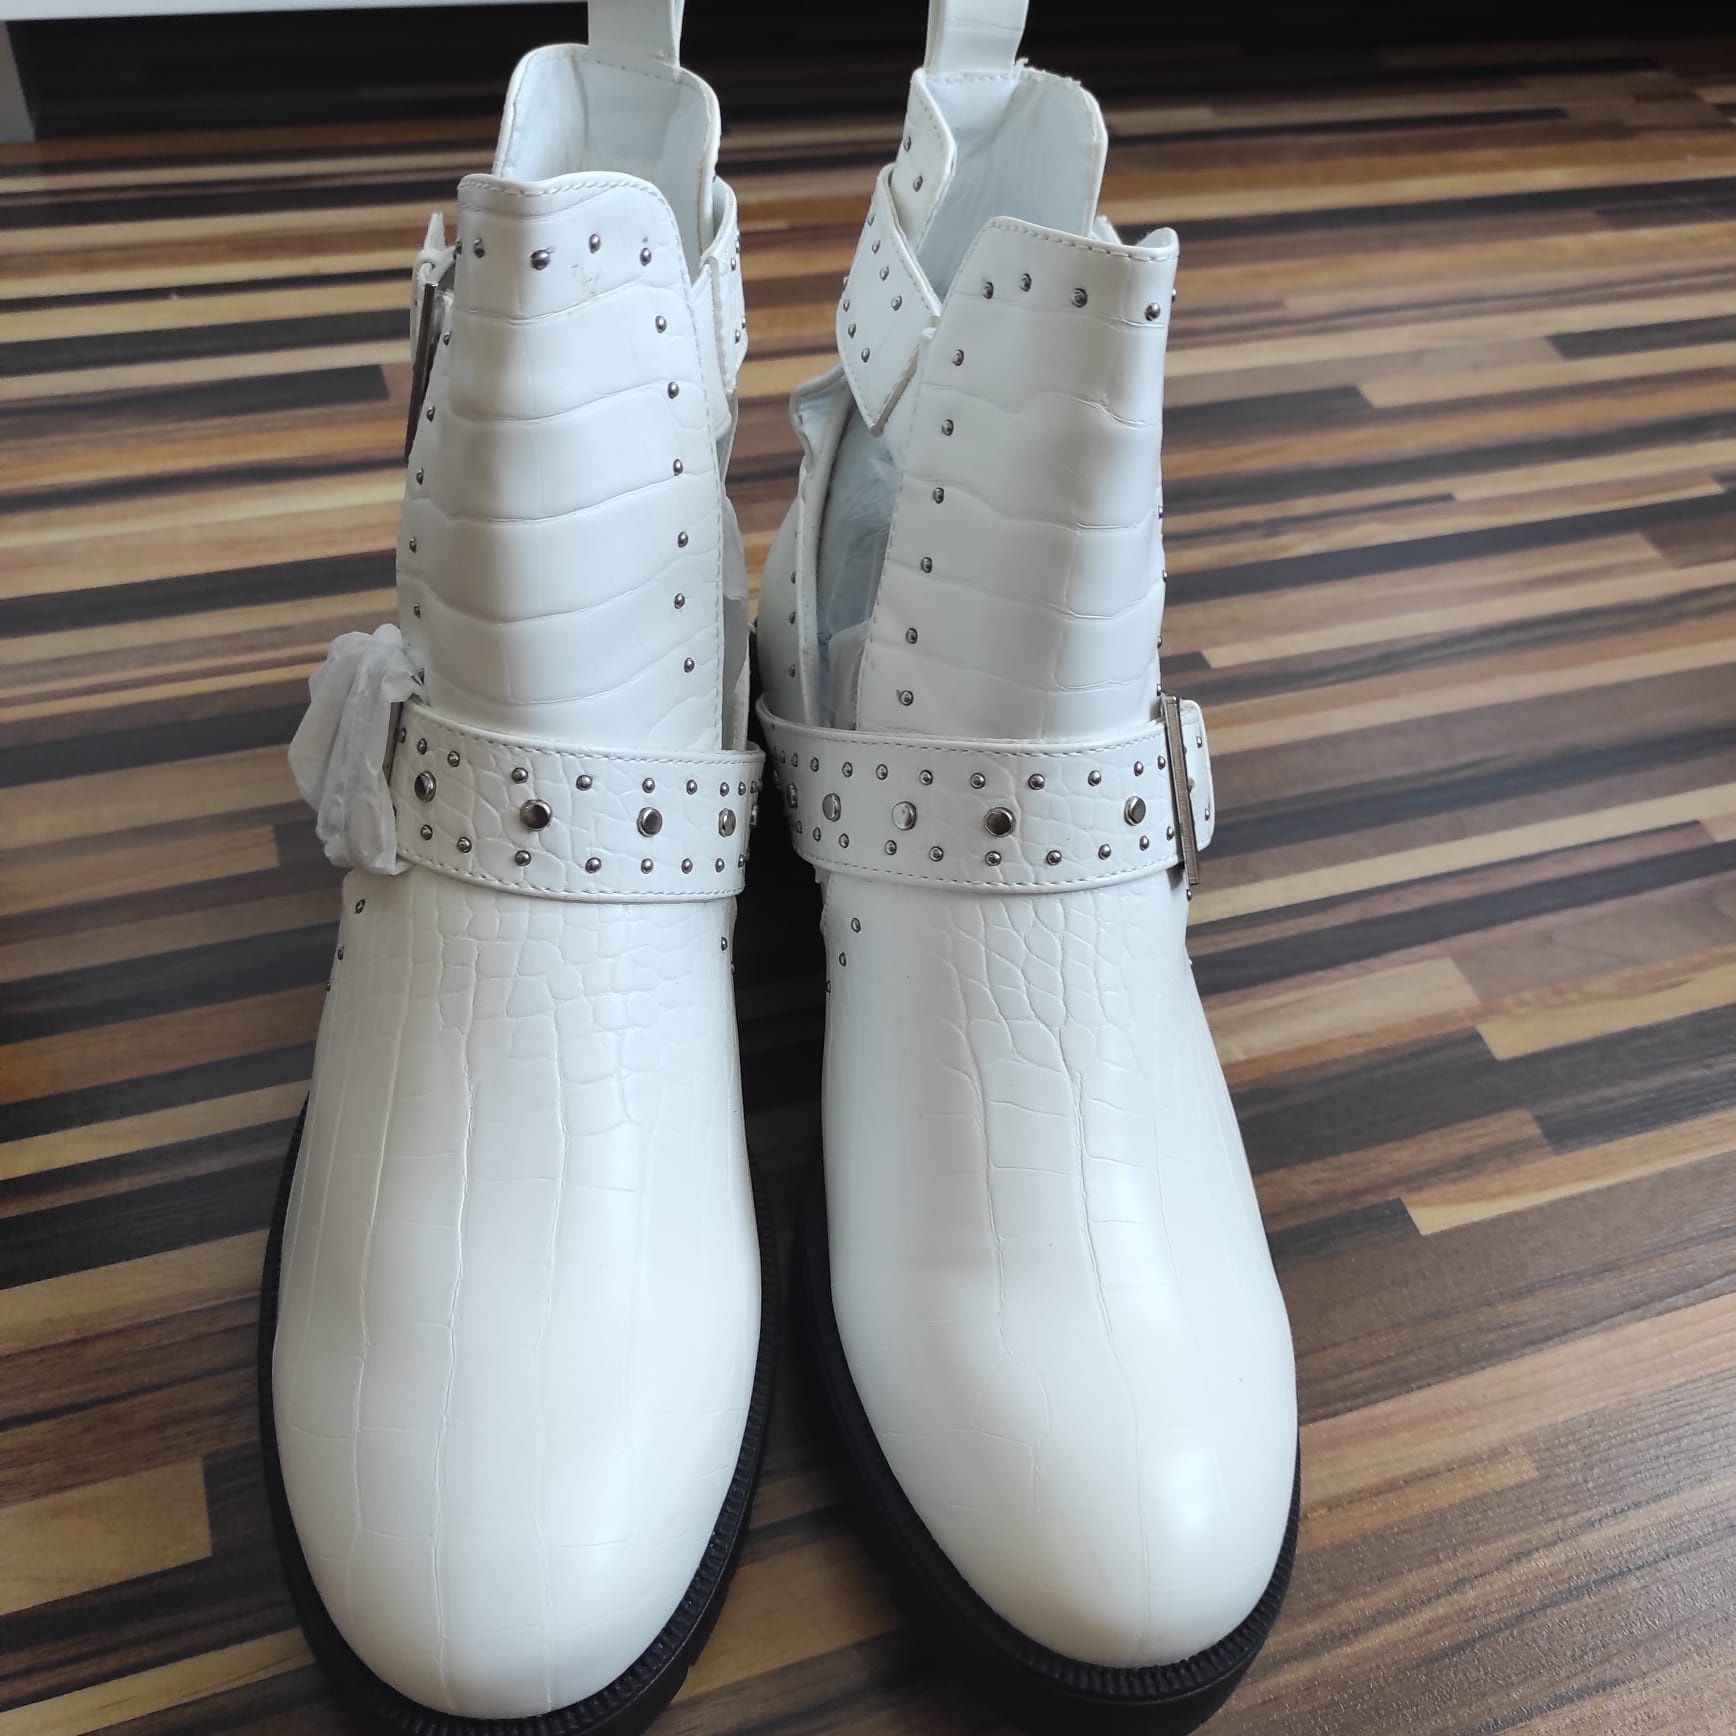 Nowe buty workery białe r. 40